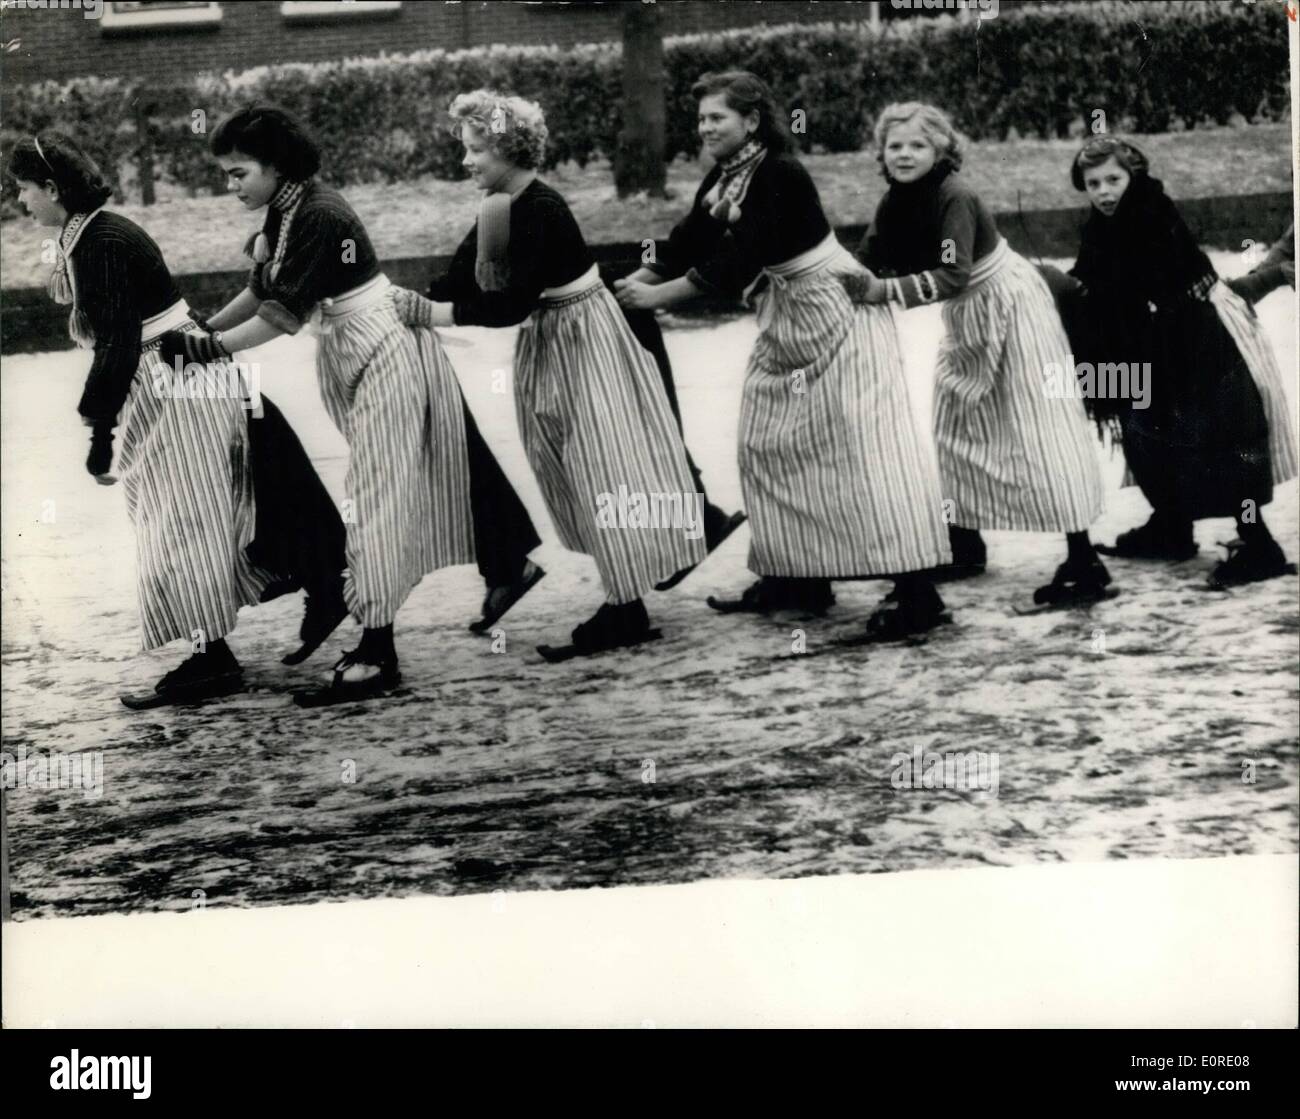 10 févr. 02, 1959 - les filles jouissent de Volendam la glace- vêtus de leurs vêtements - caractéristique de ces filles Voledam, Hollande, s'accrocher à l'autre comme ils jouissent eux-mêmes le patin à glace. Banque D'Images